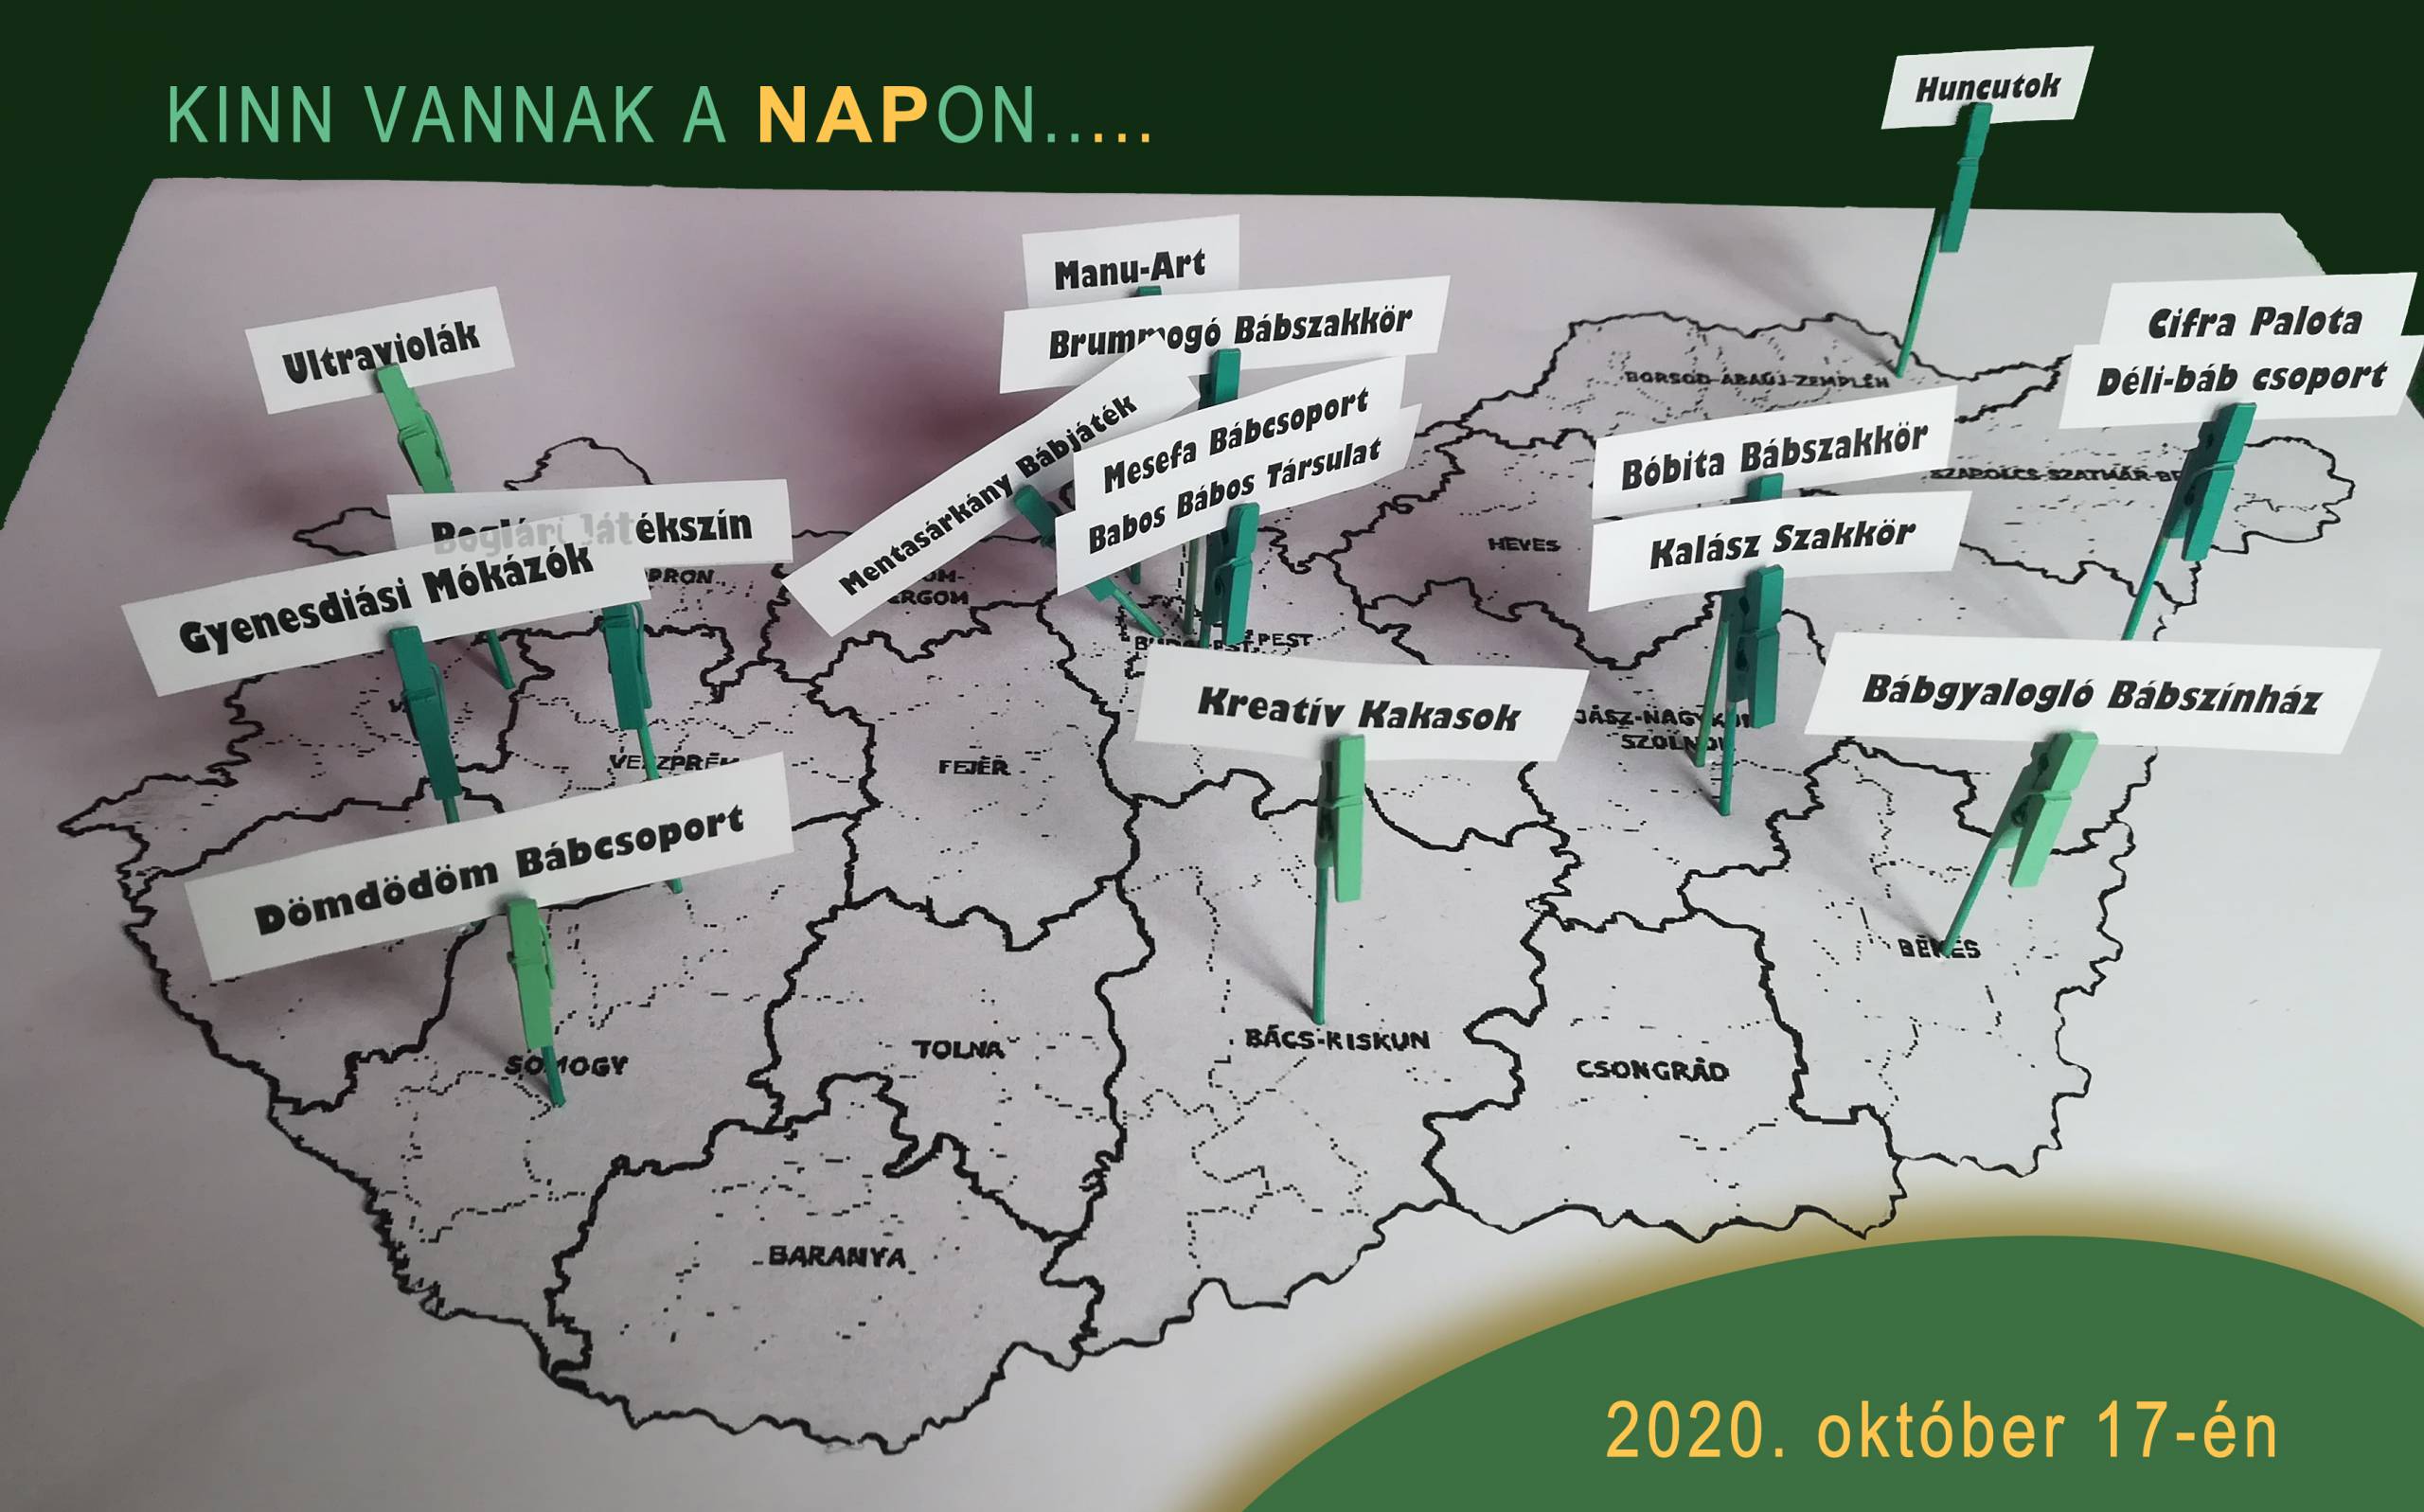 Bábcsoportok a térképen II.